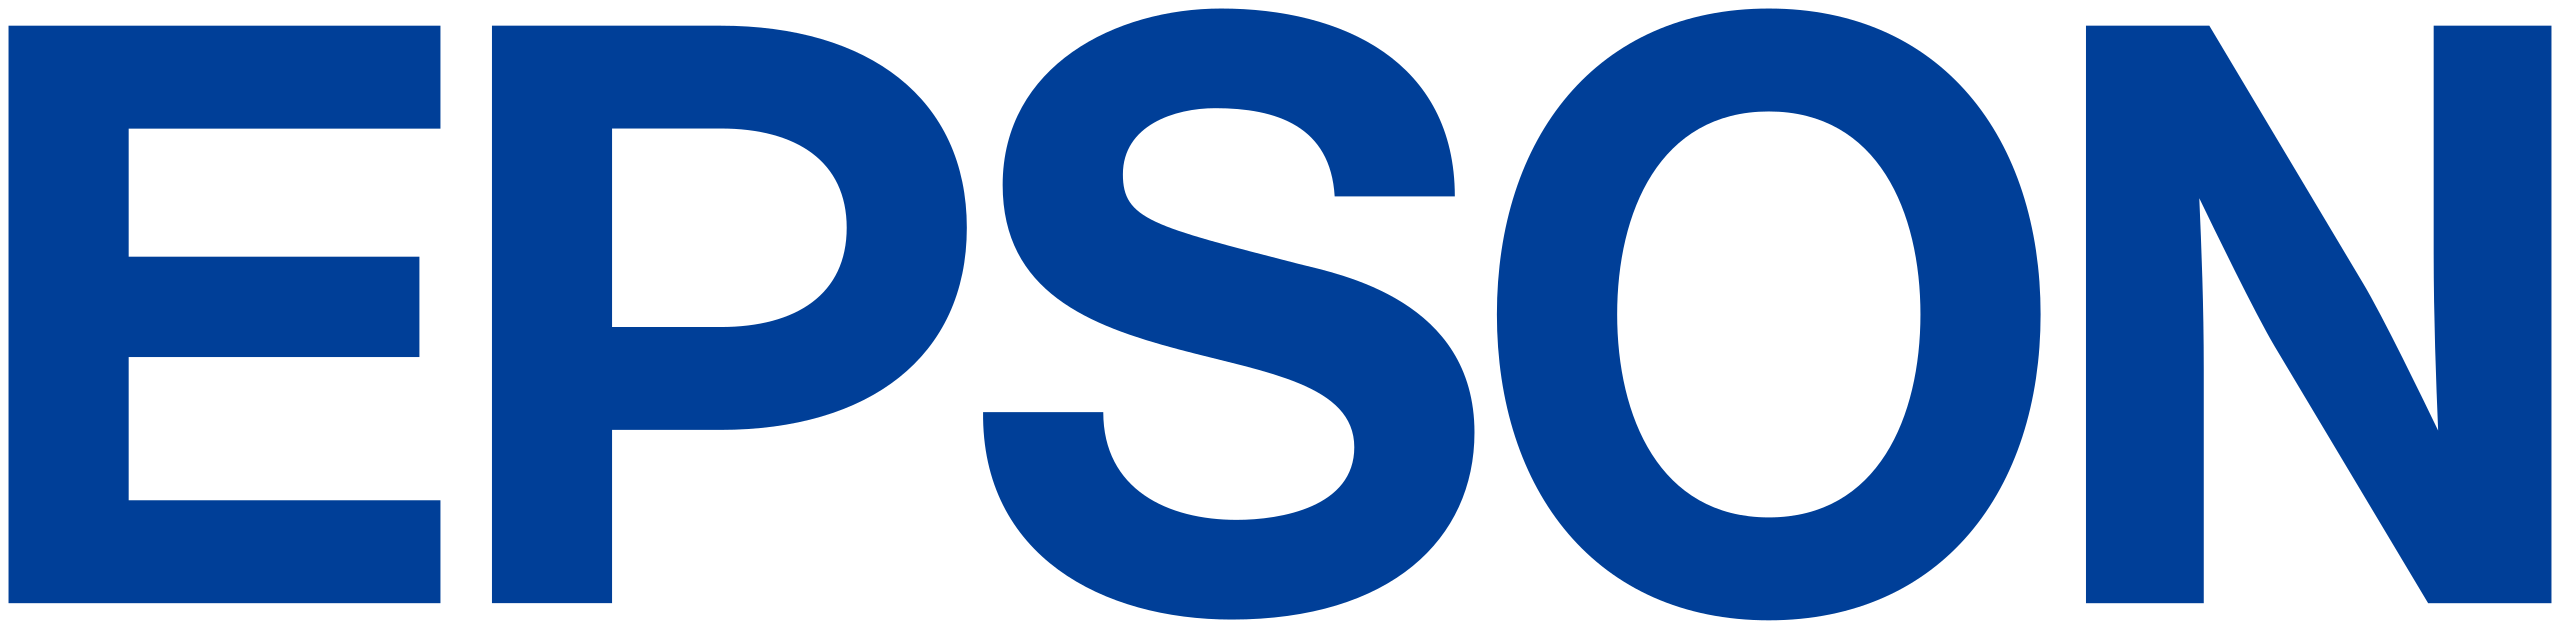 Epson_logo 1